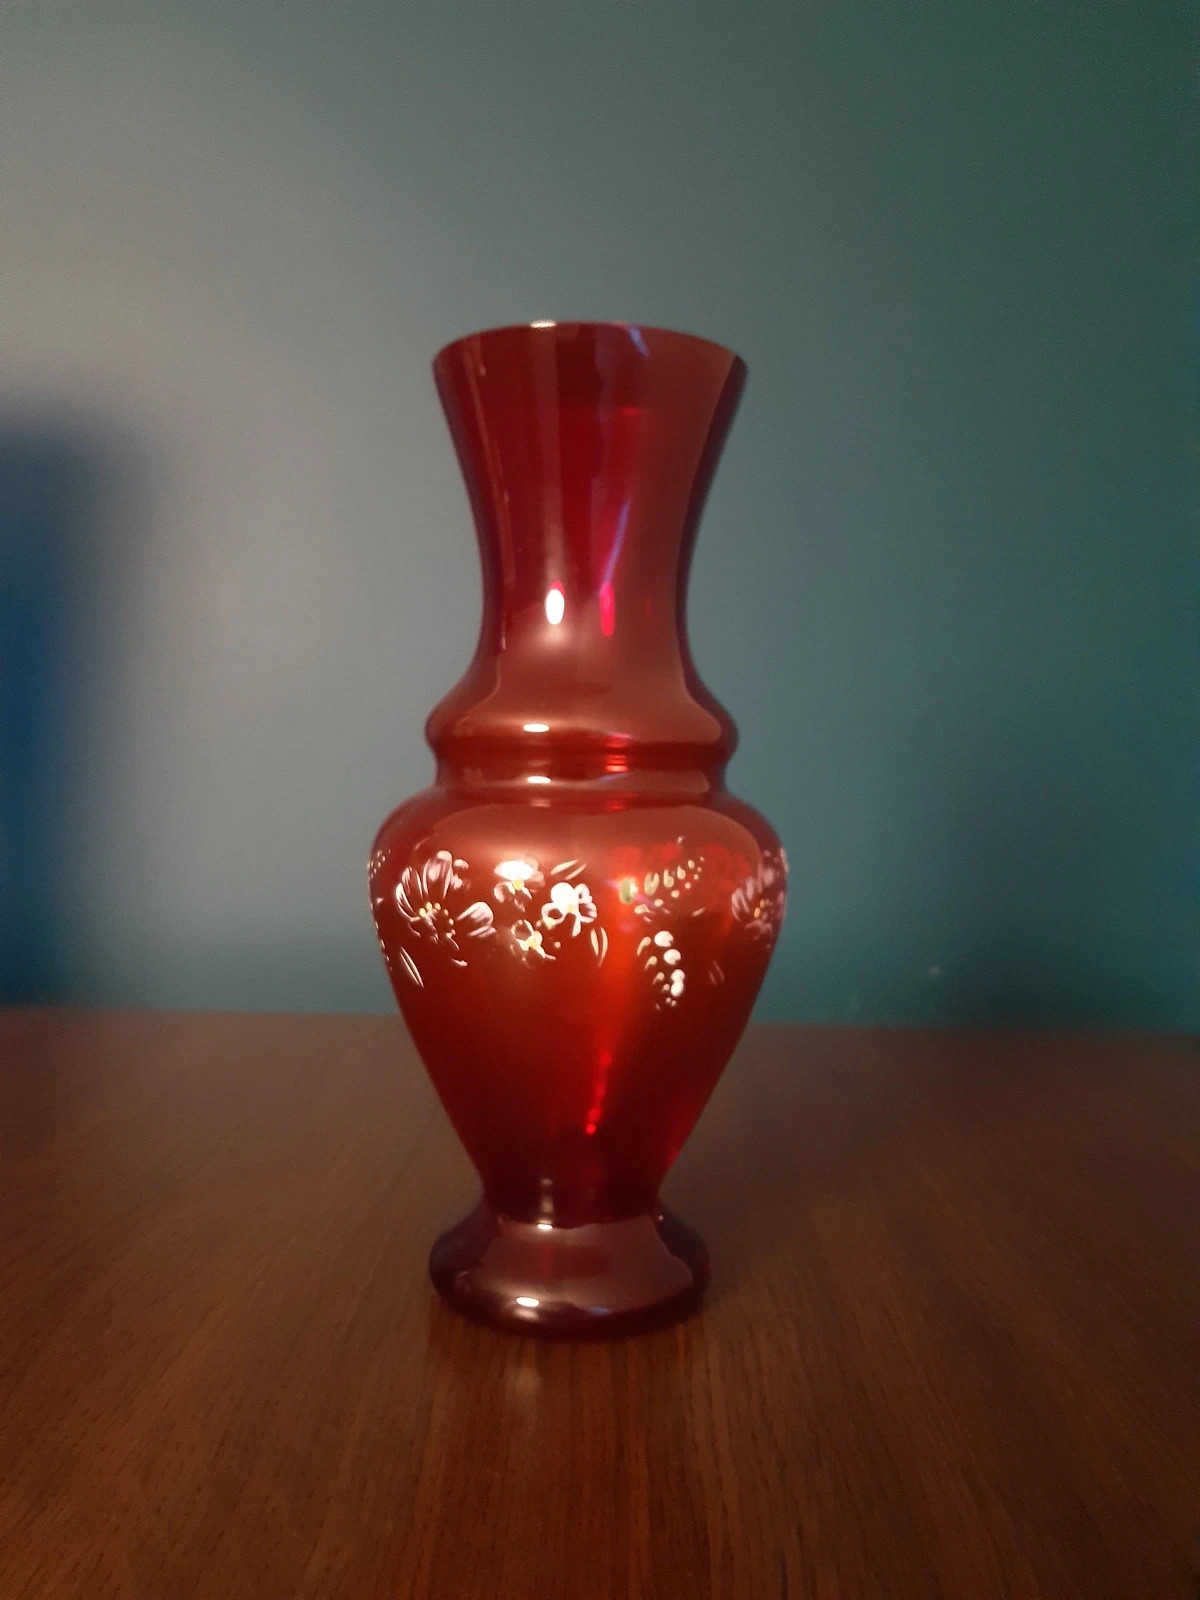 Stary wazon z czerwonego szkła